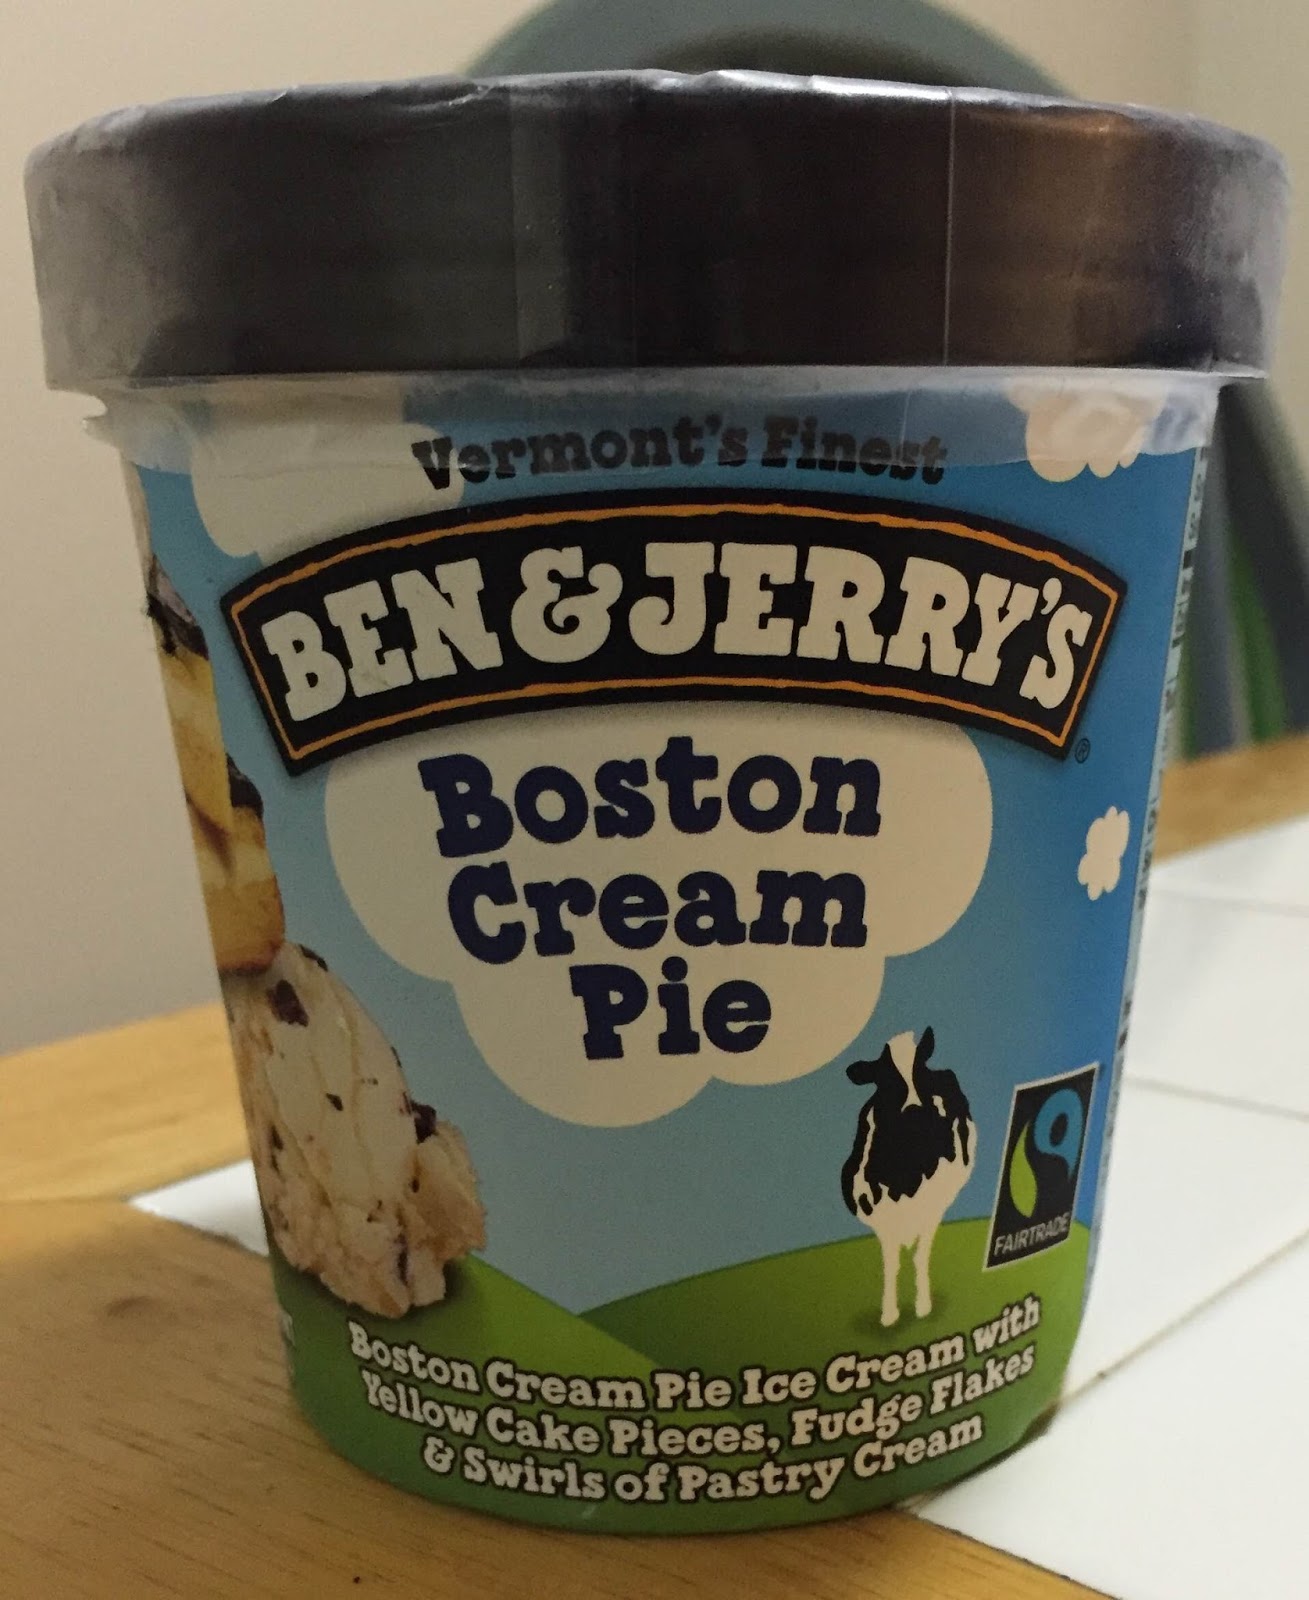 Ben and Jerry's Boston Cream Pie